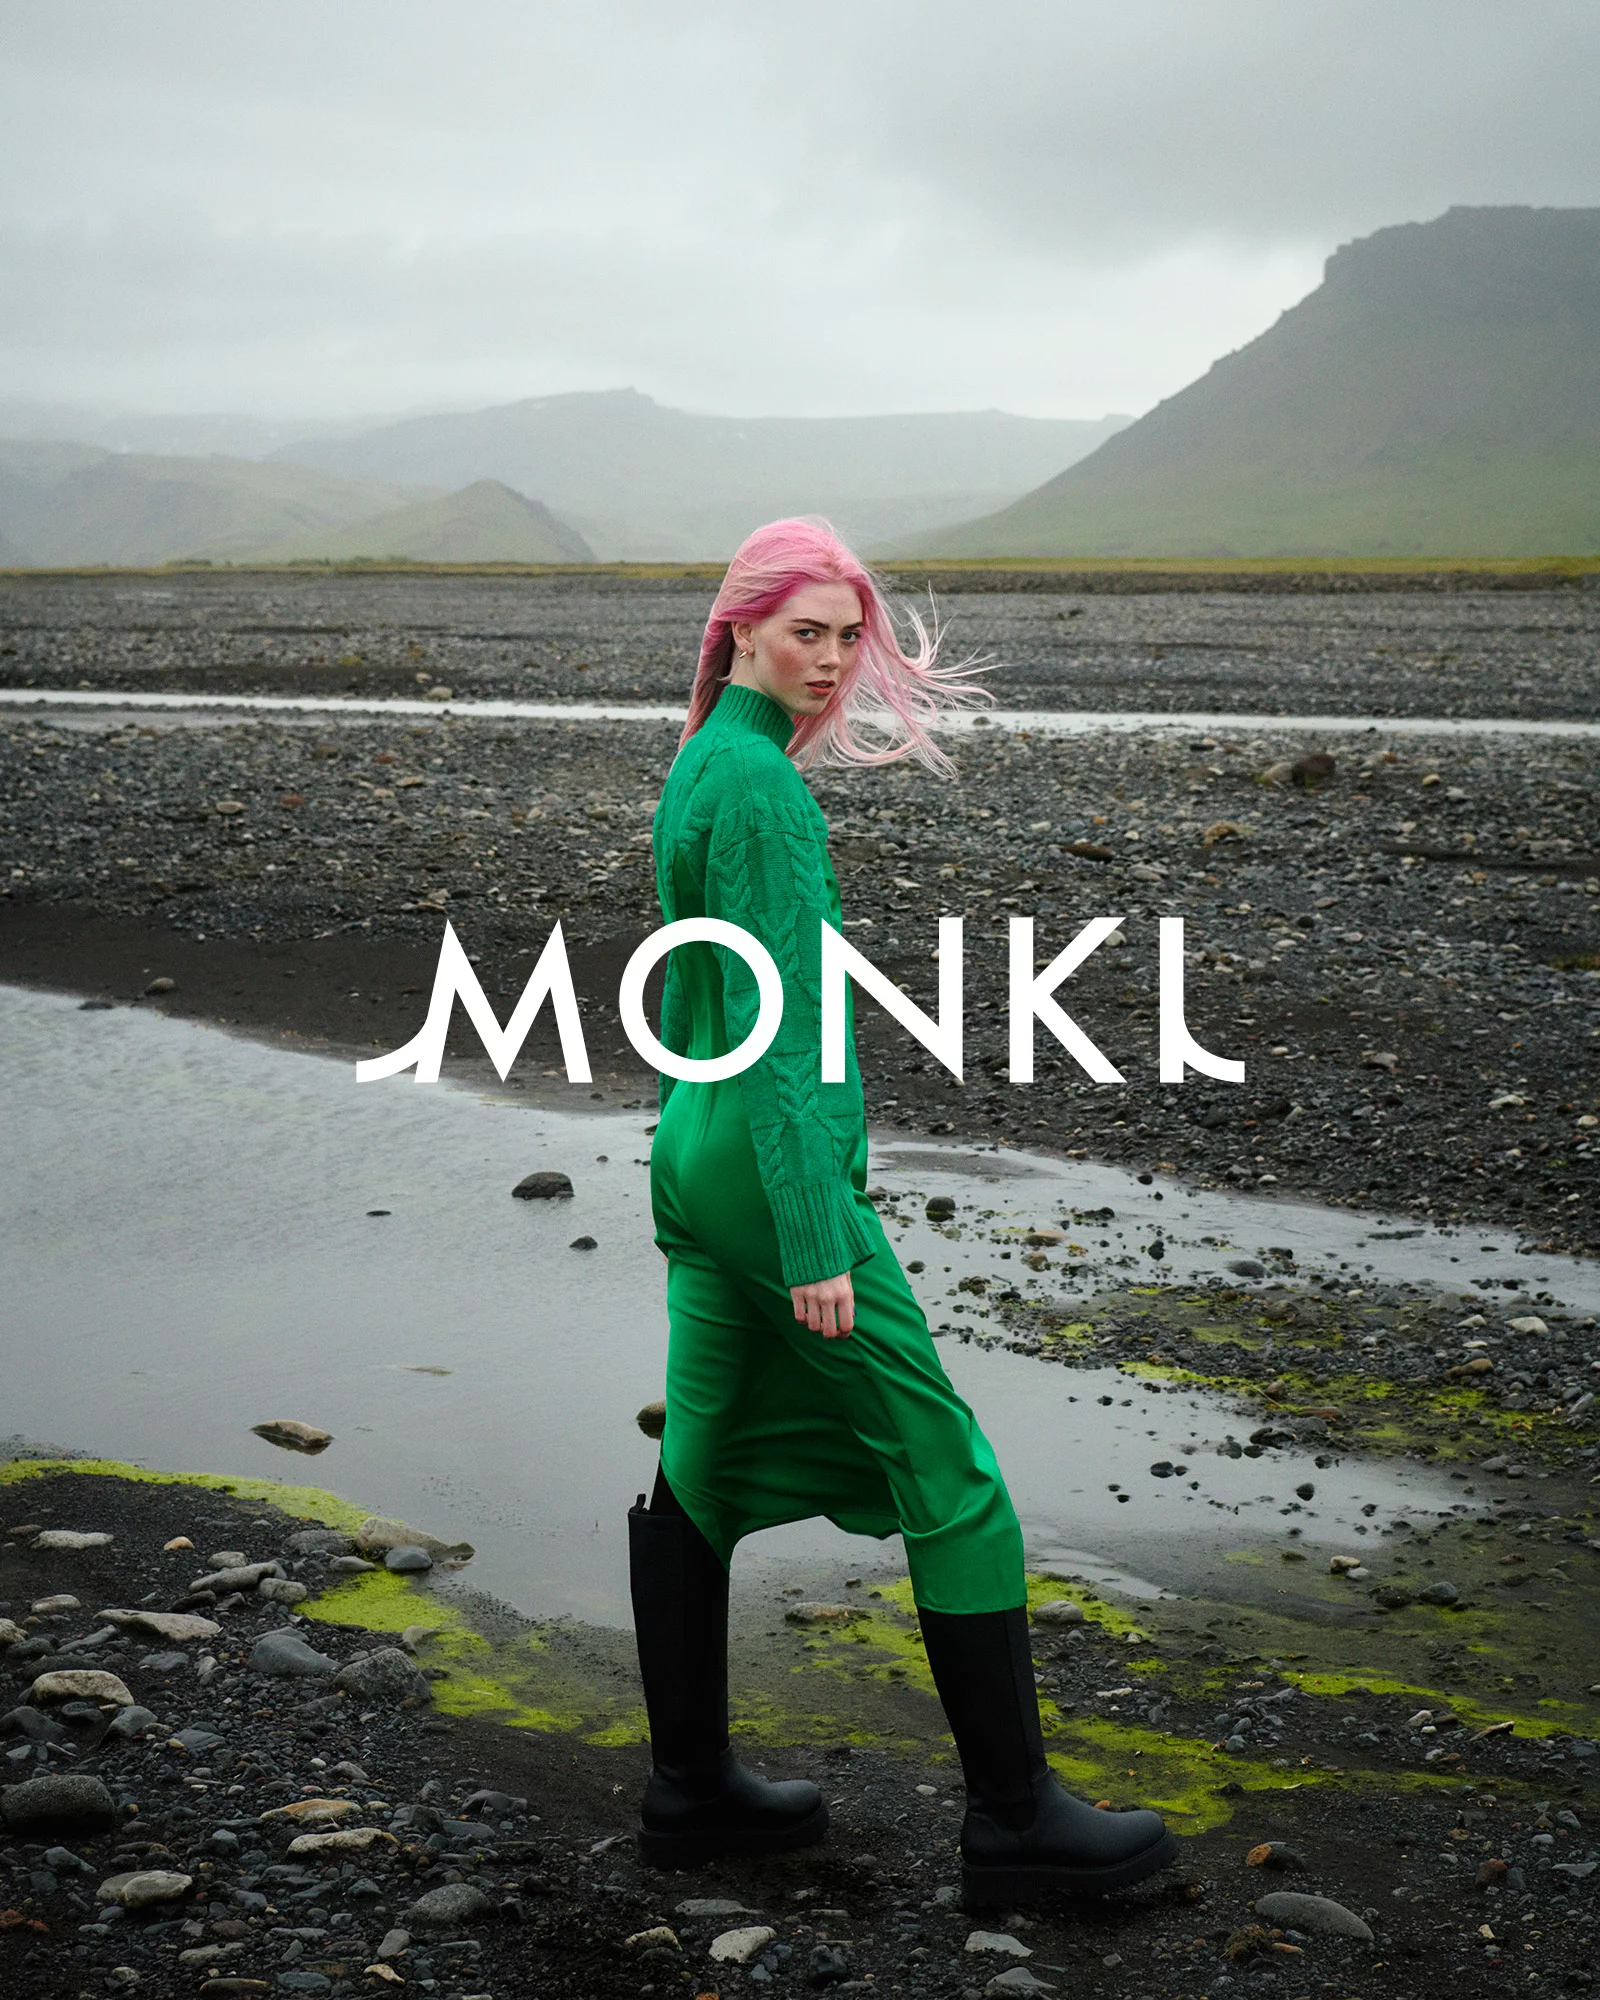 MONKI 5 by Tobias LUNDKVIST